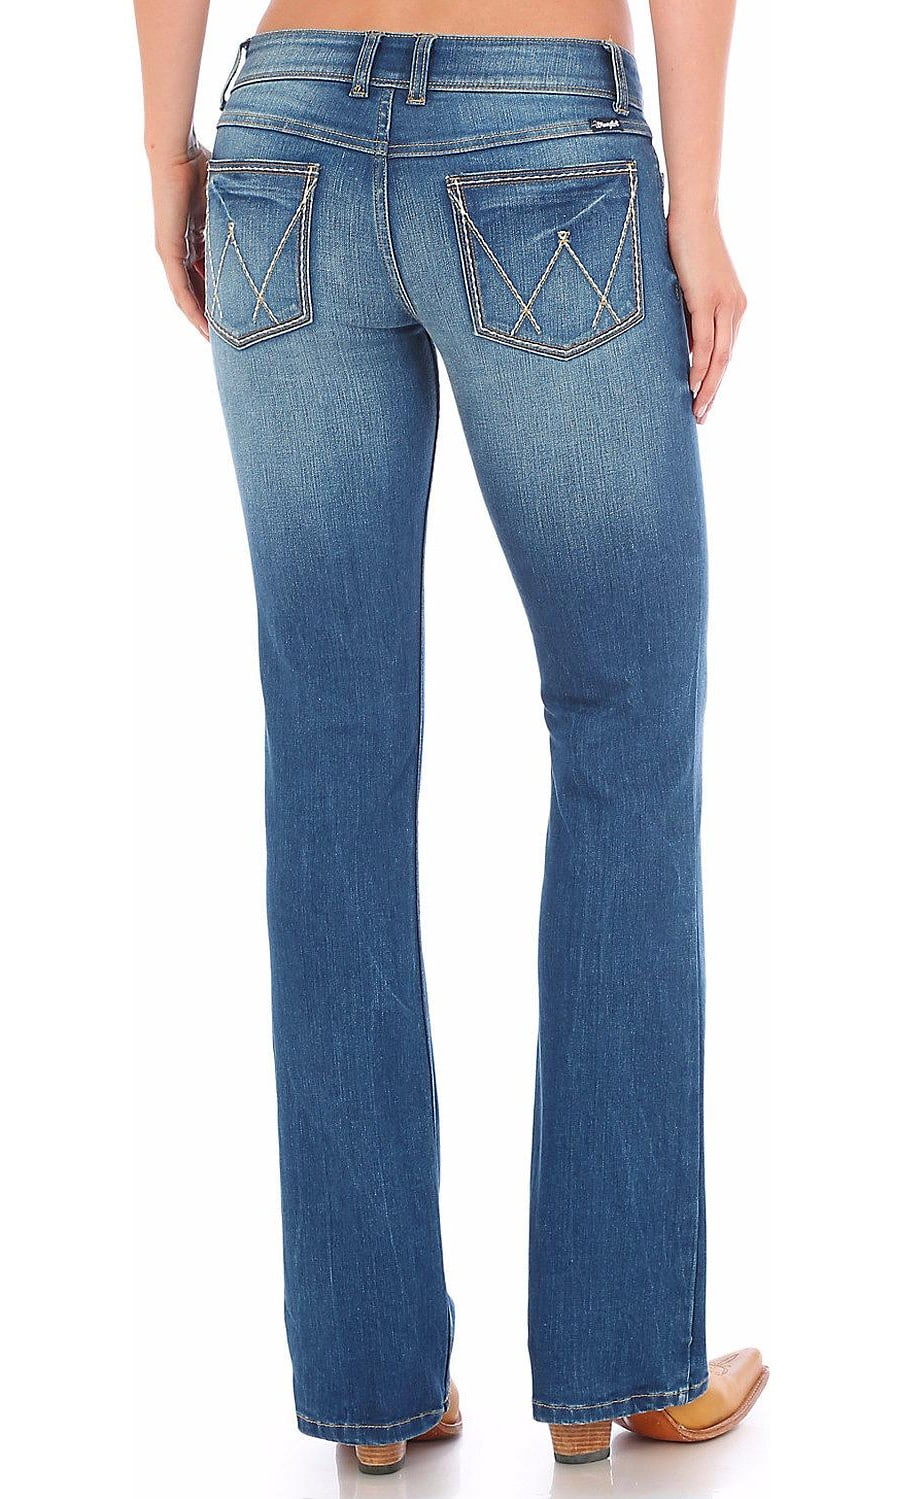 Wrangler Women's Mid Rise Bootcut Jeans - Light Indigo